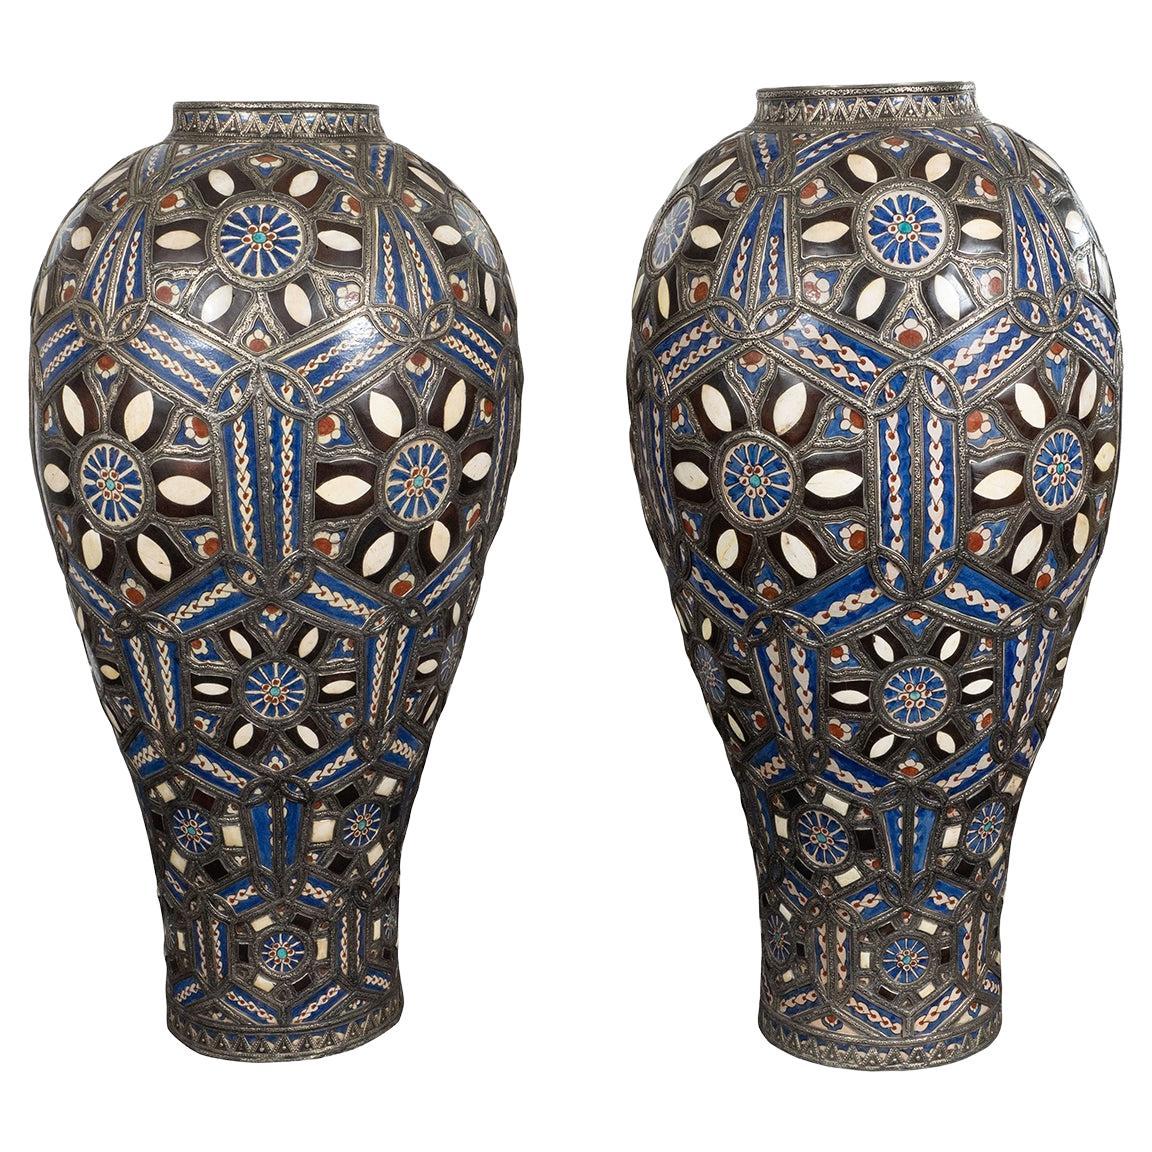 Monumentale, farbenfrohe marokkanische Keramikvasen aus Marokko, Paar